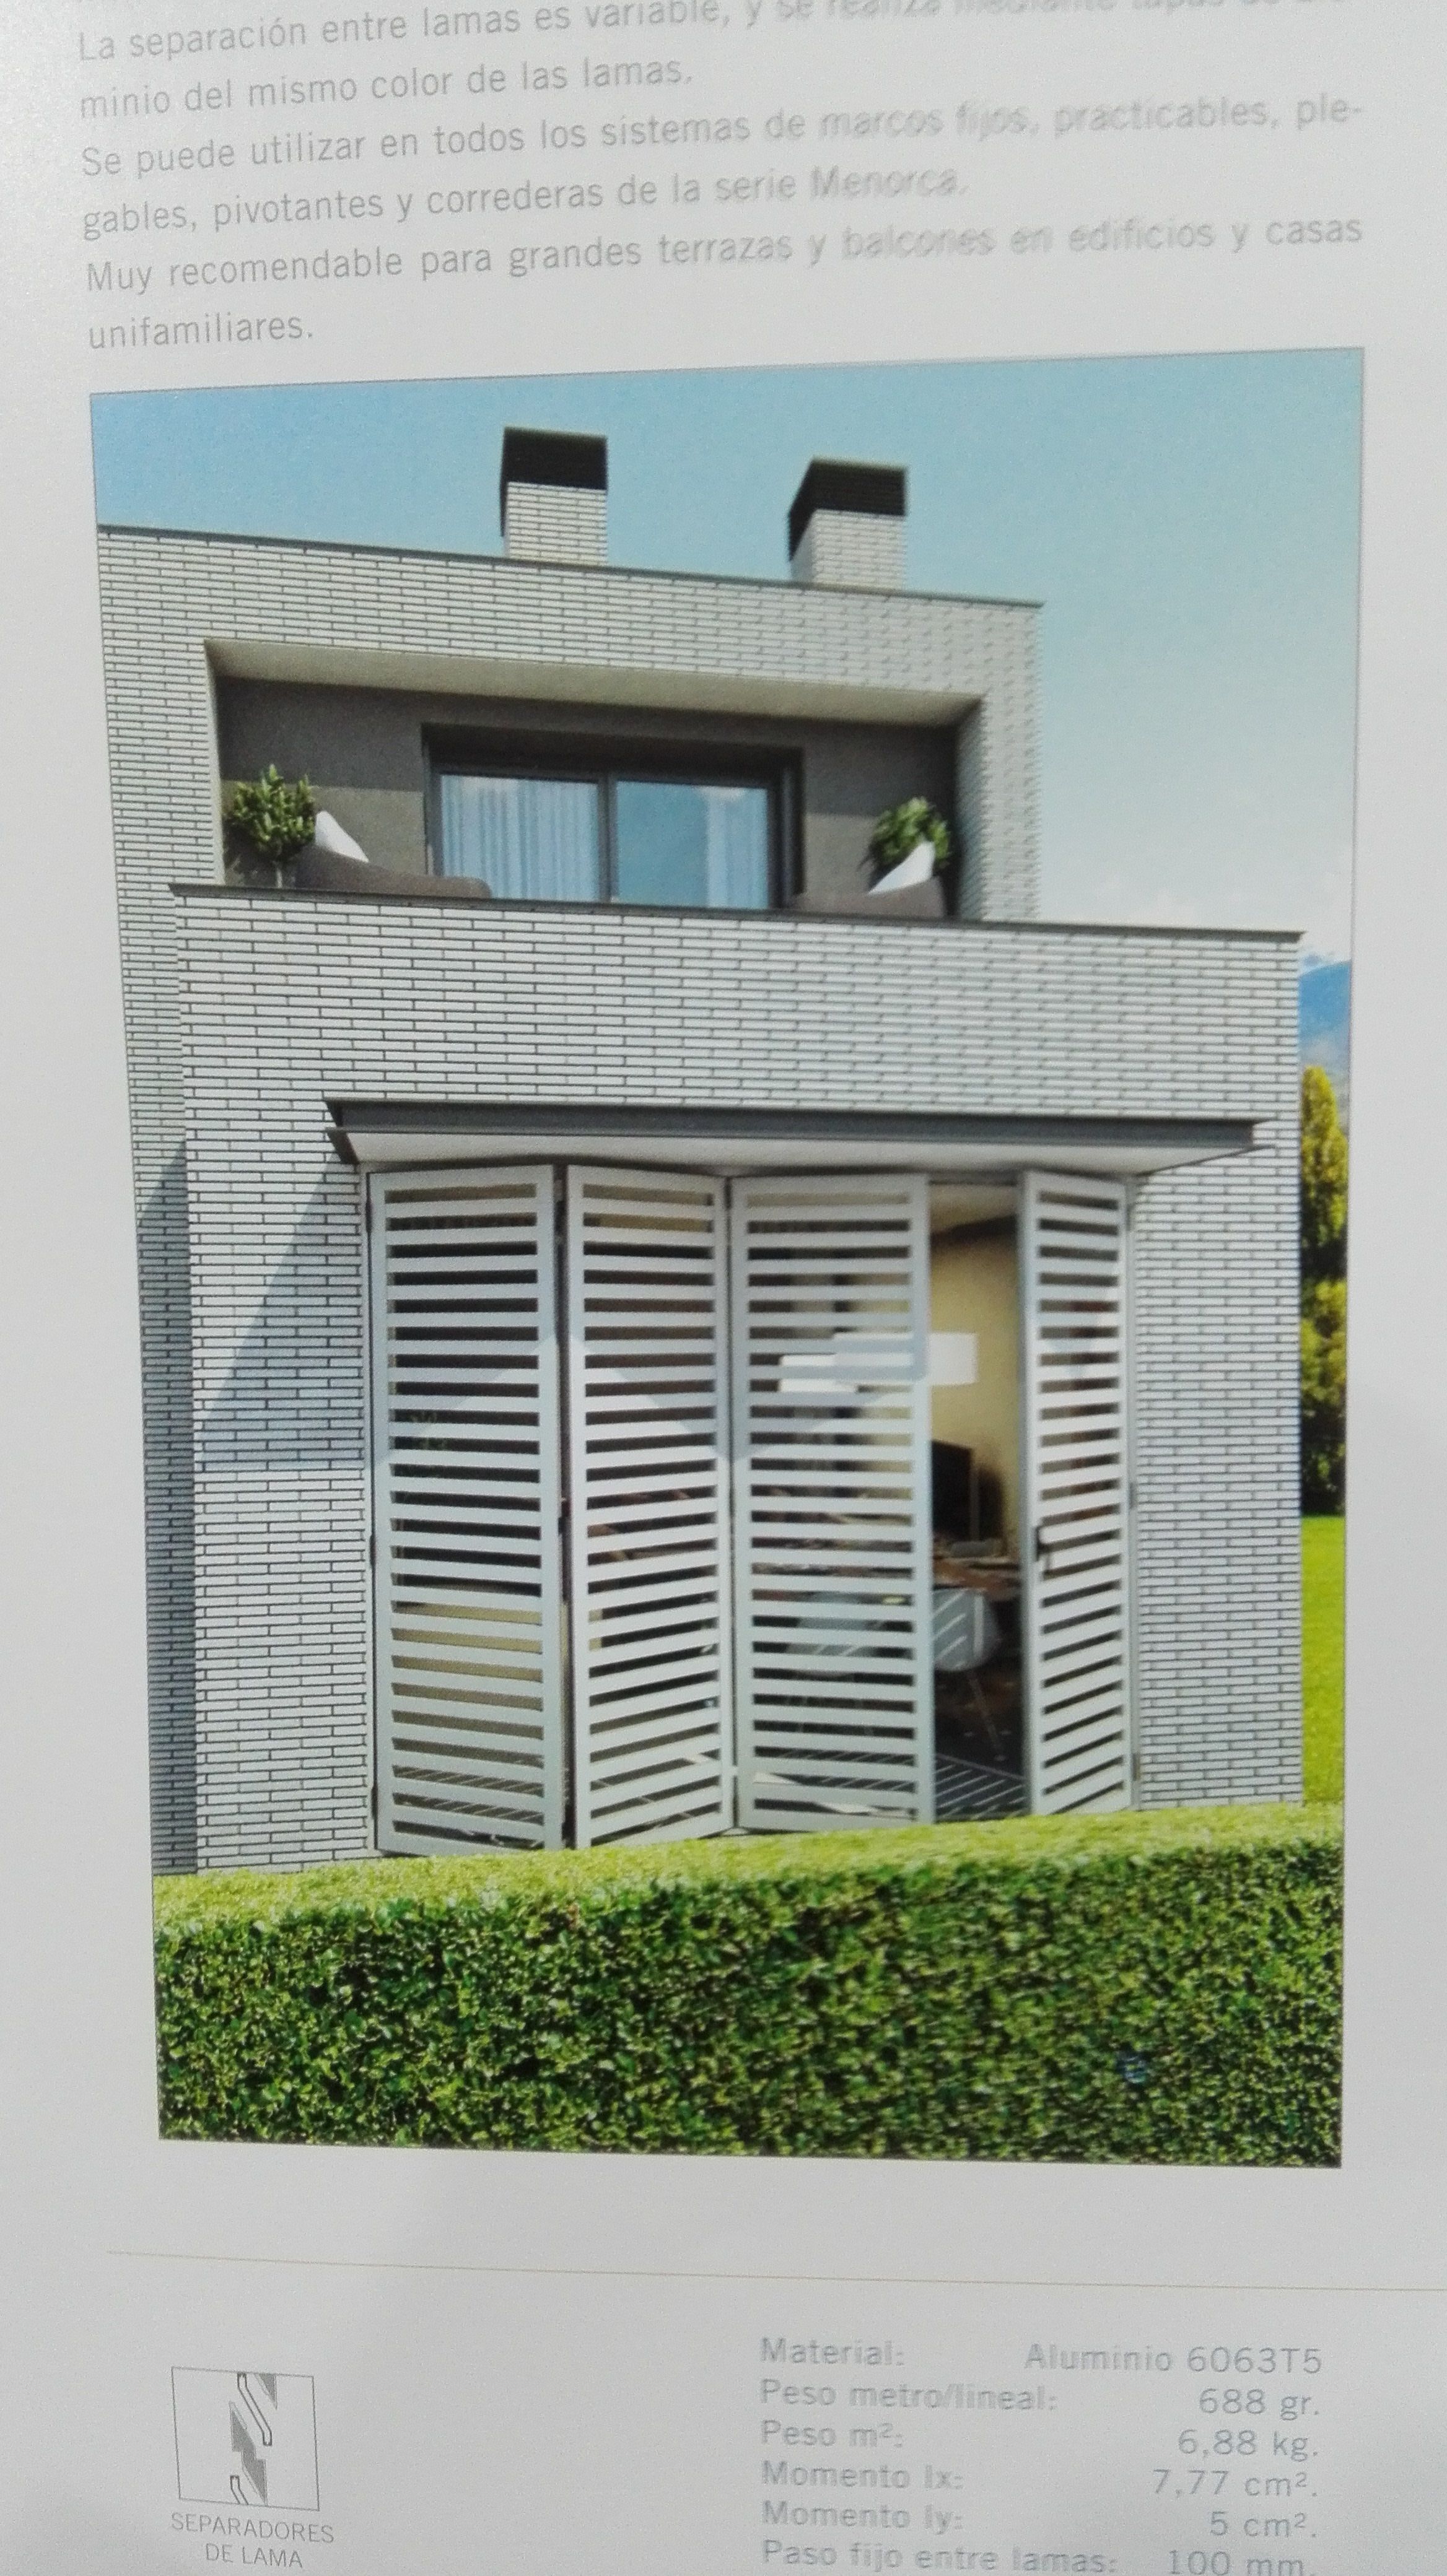 Foto 4 de Ventanas y puertas de PVC y aluminio en Vilassar de Mar | Disseny Amb Vidre